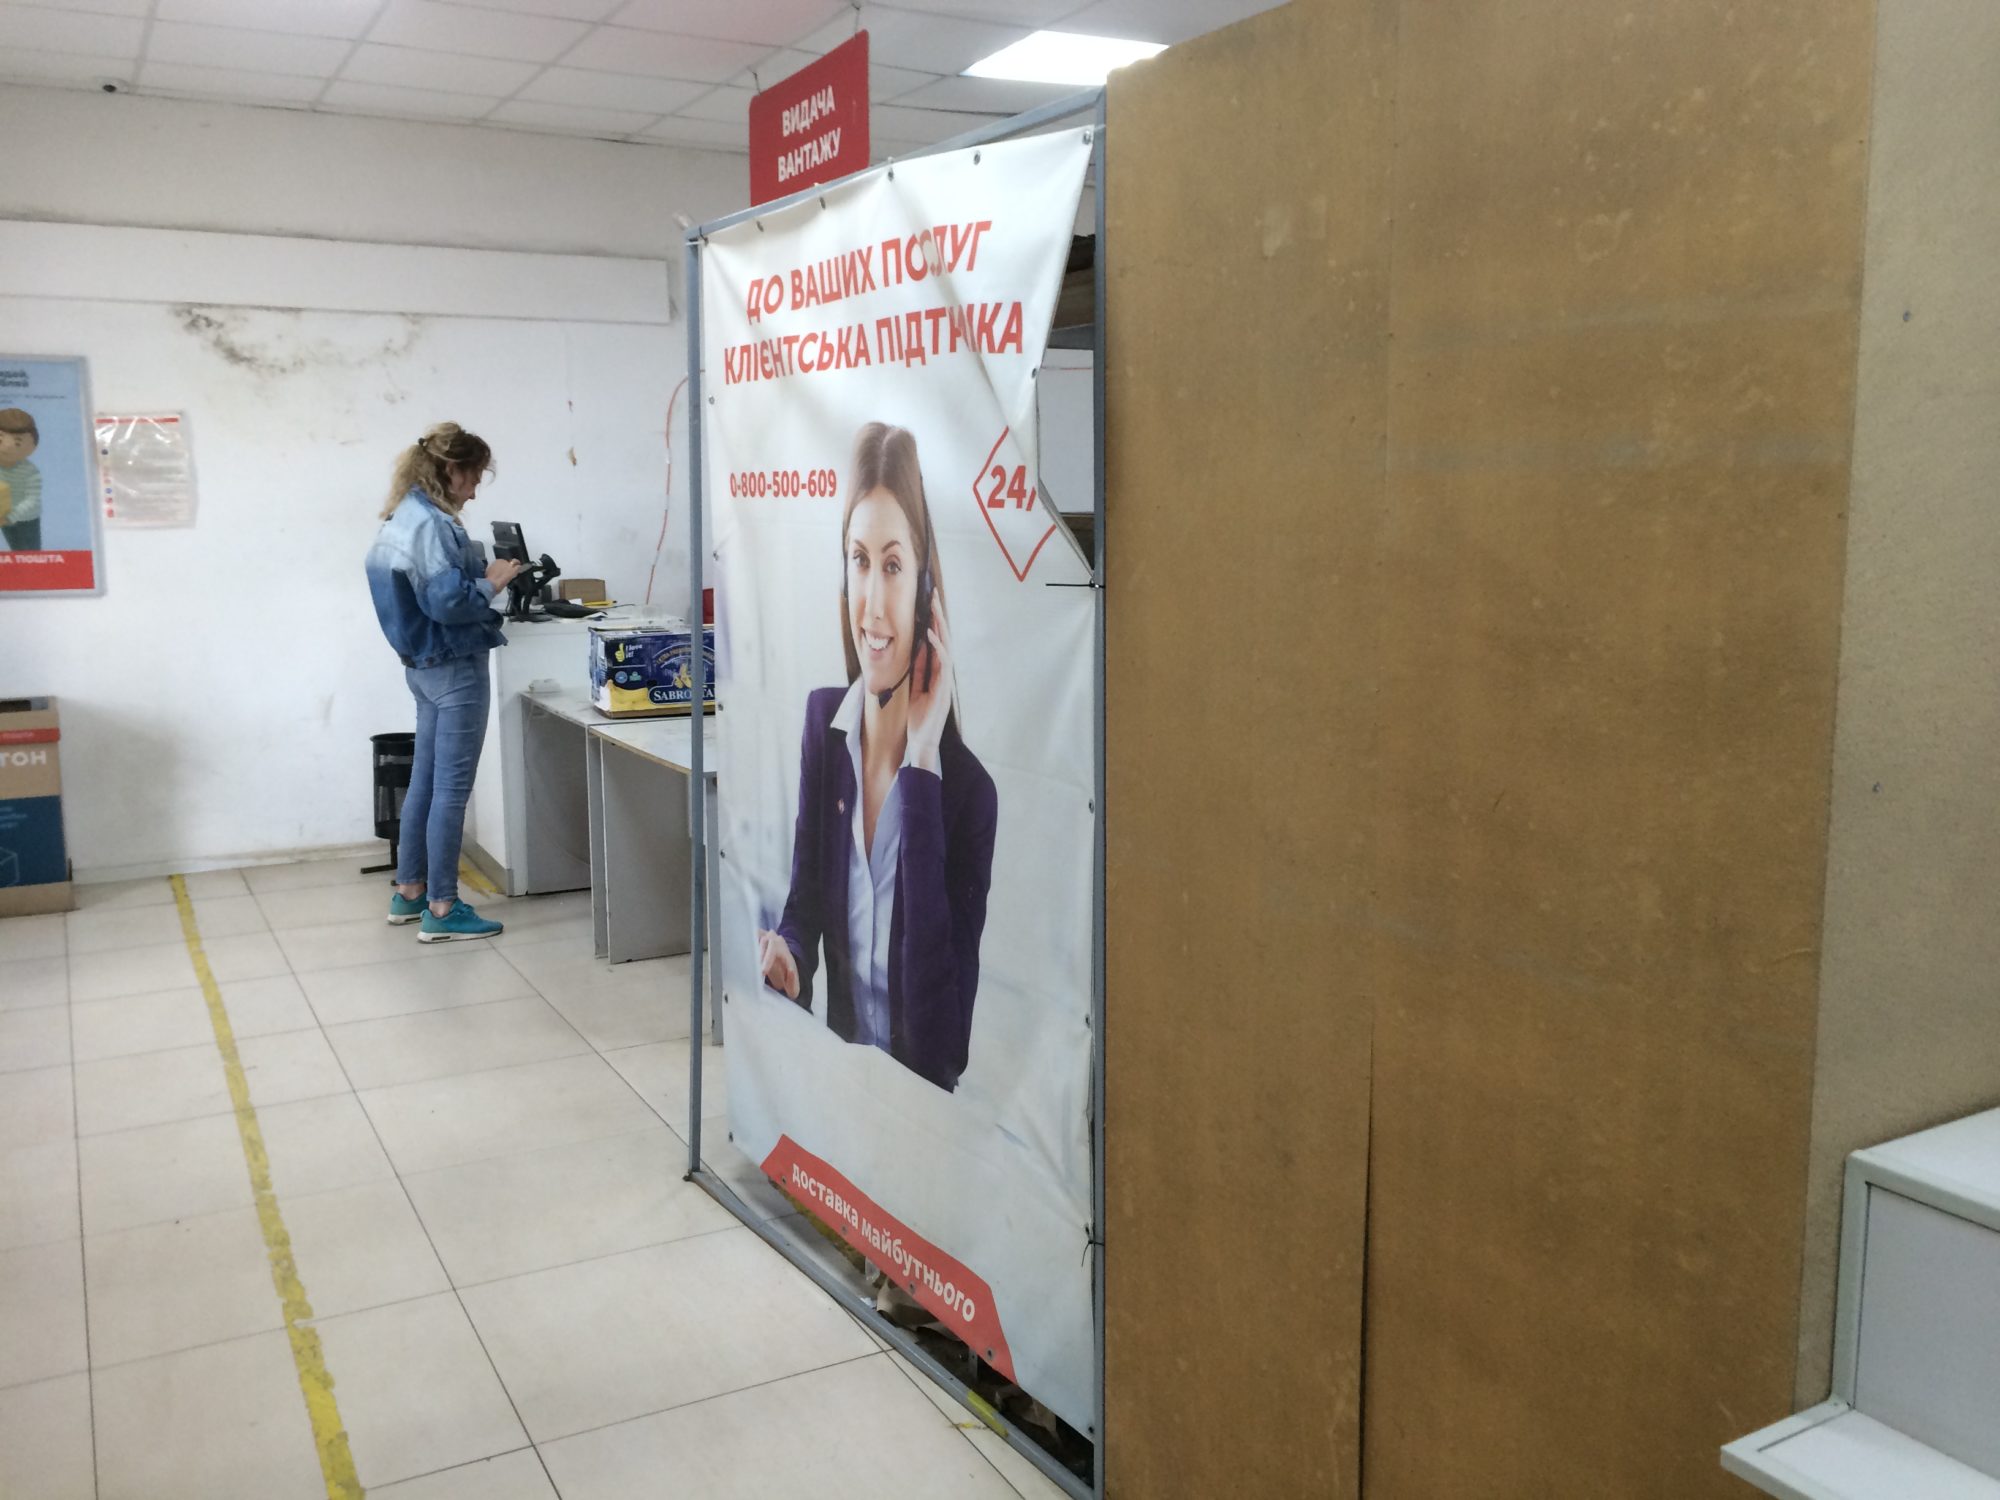 Еще 2 отделения "Новой почты" заработали в Донецкой области — в Бахмуте и Краматорске